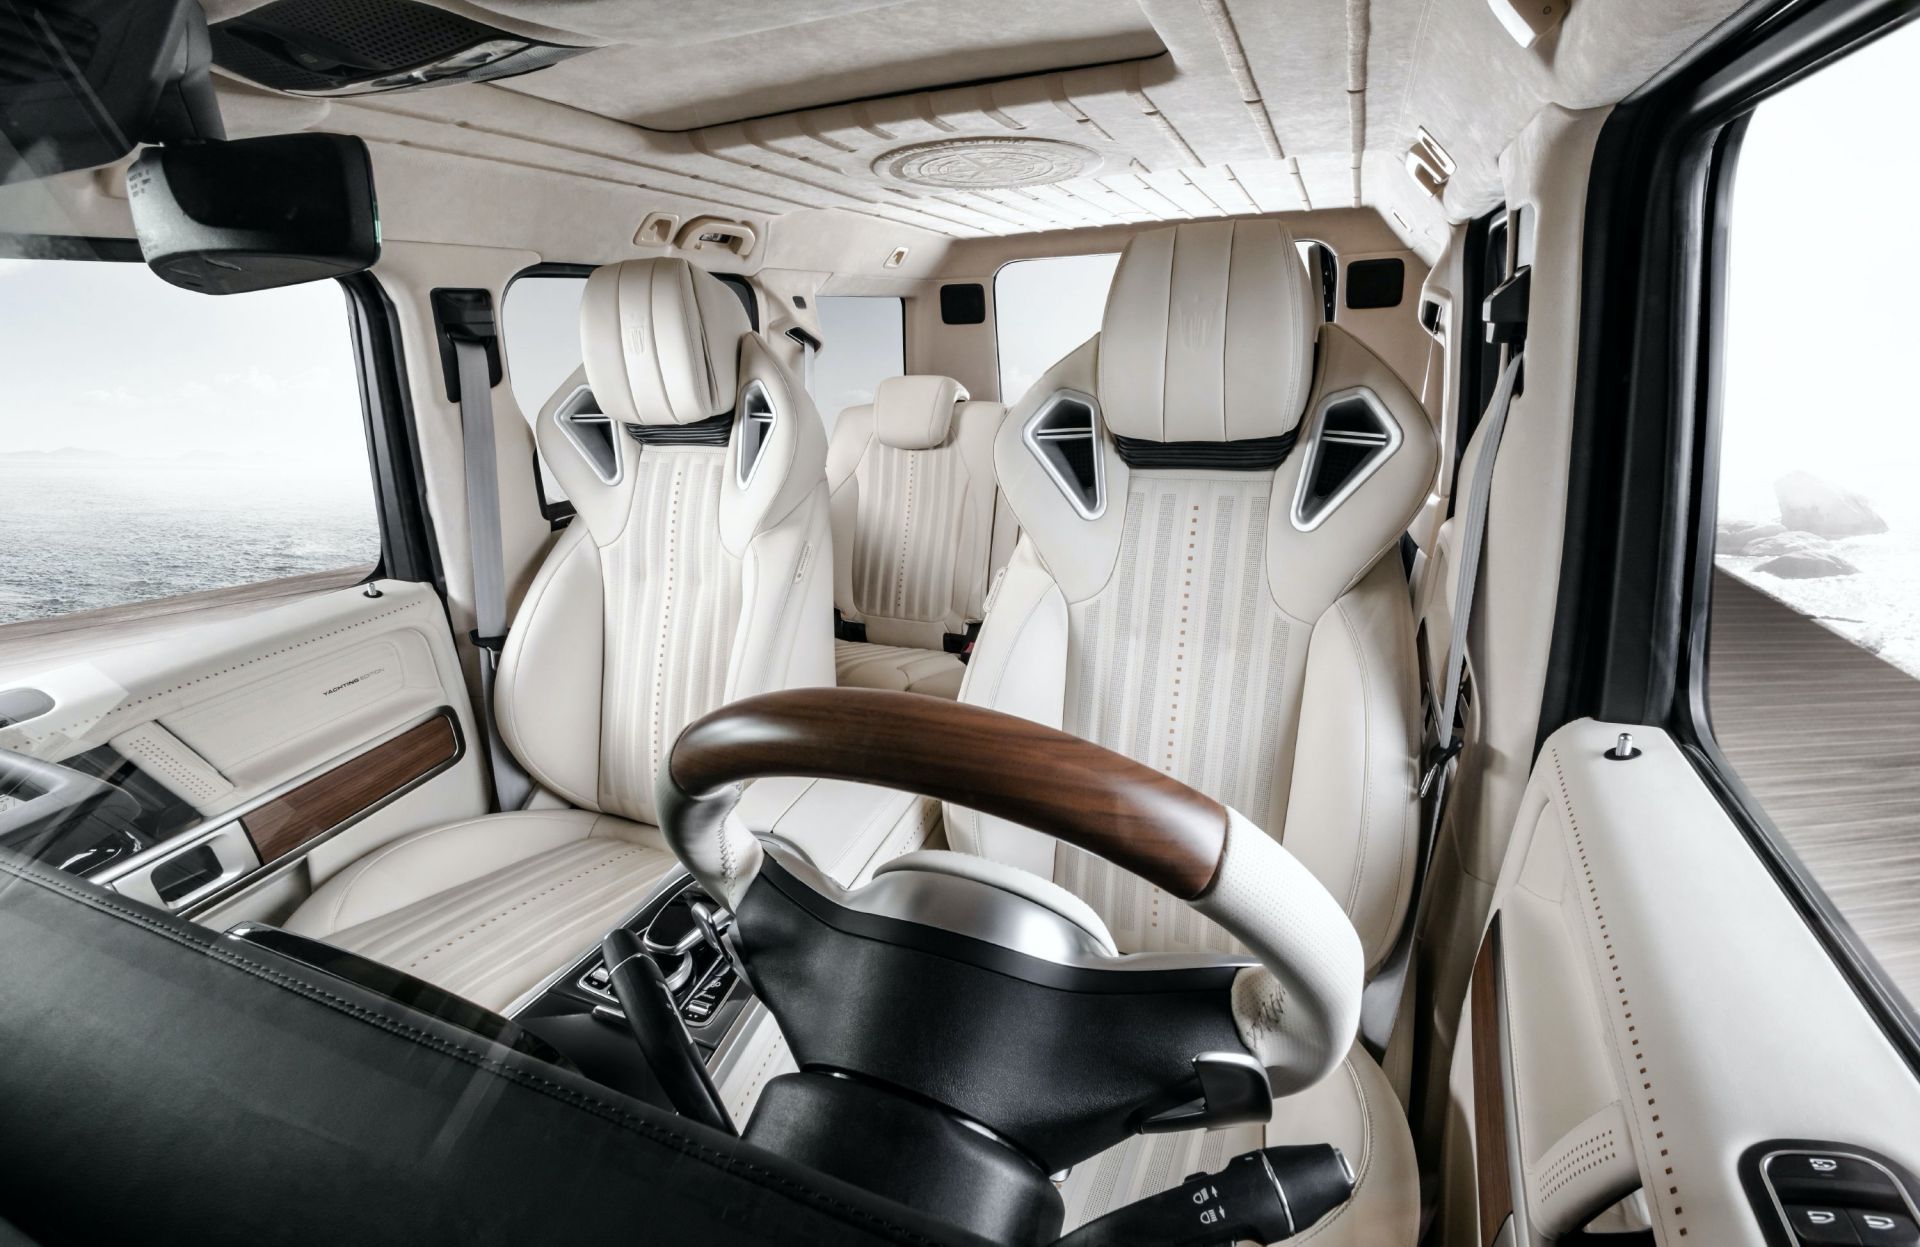 2020 Mercedes-AMG G63 Yachting Edition by Carlex Design